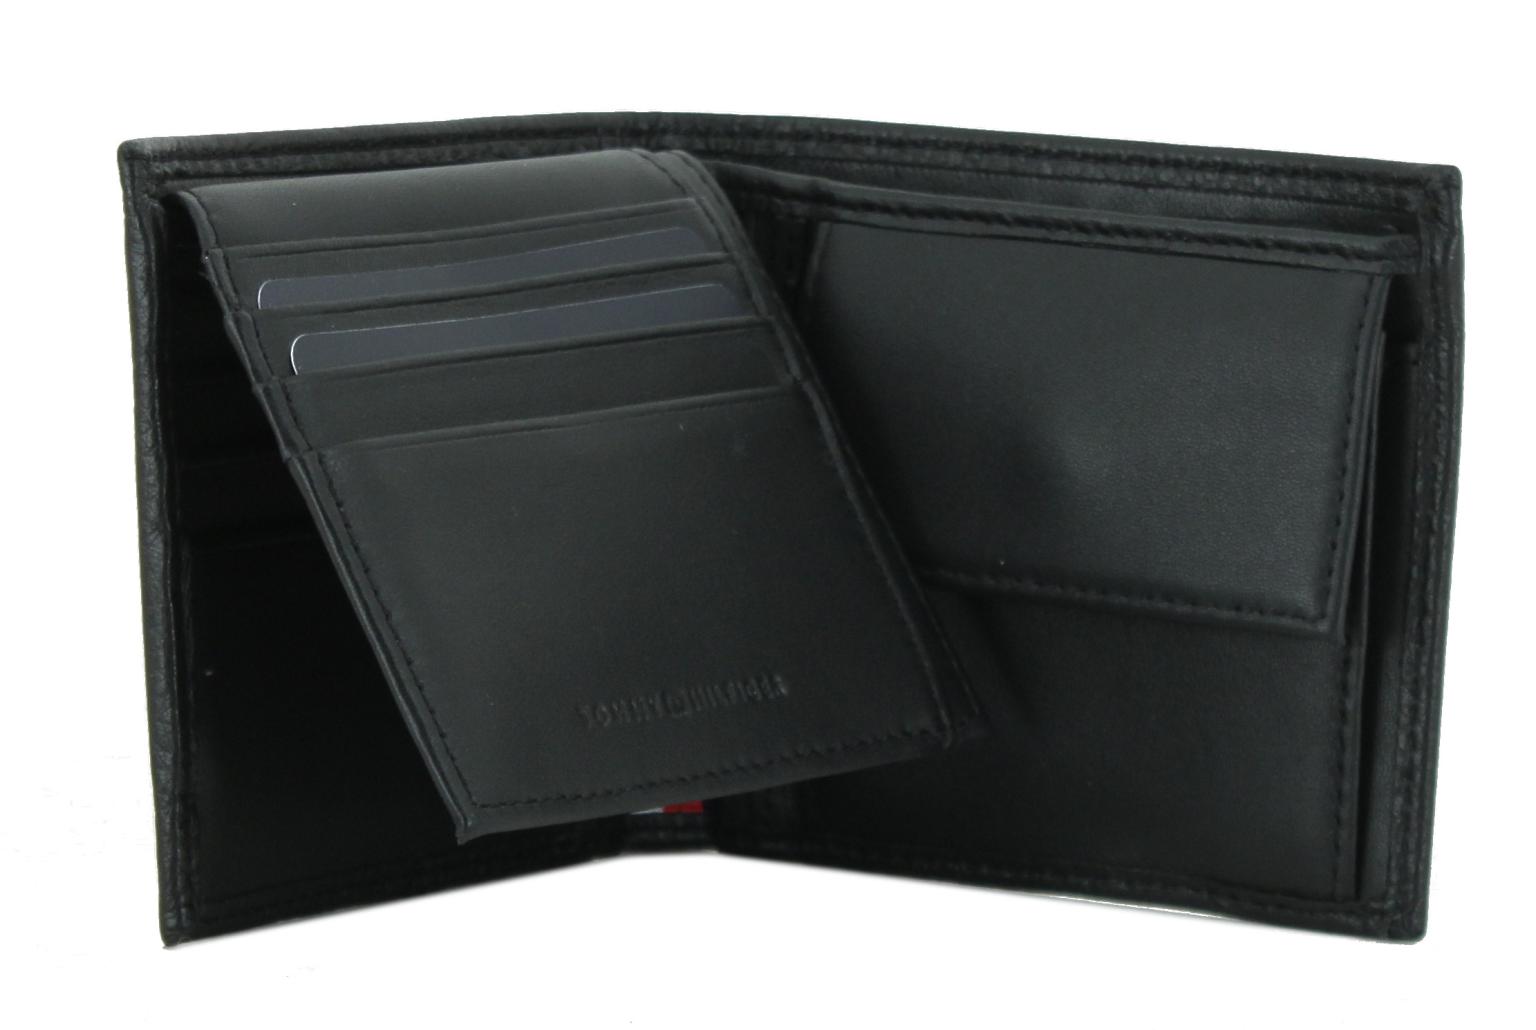 Lederbörse Tommy Hilfiger Premium Leather Black CC Flap and Coin 